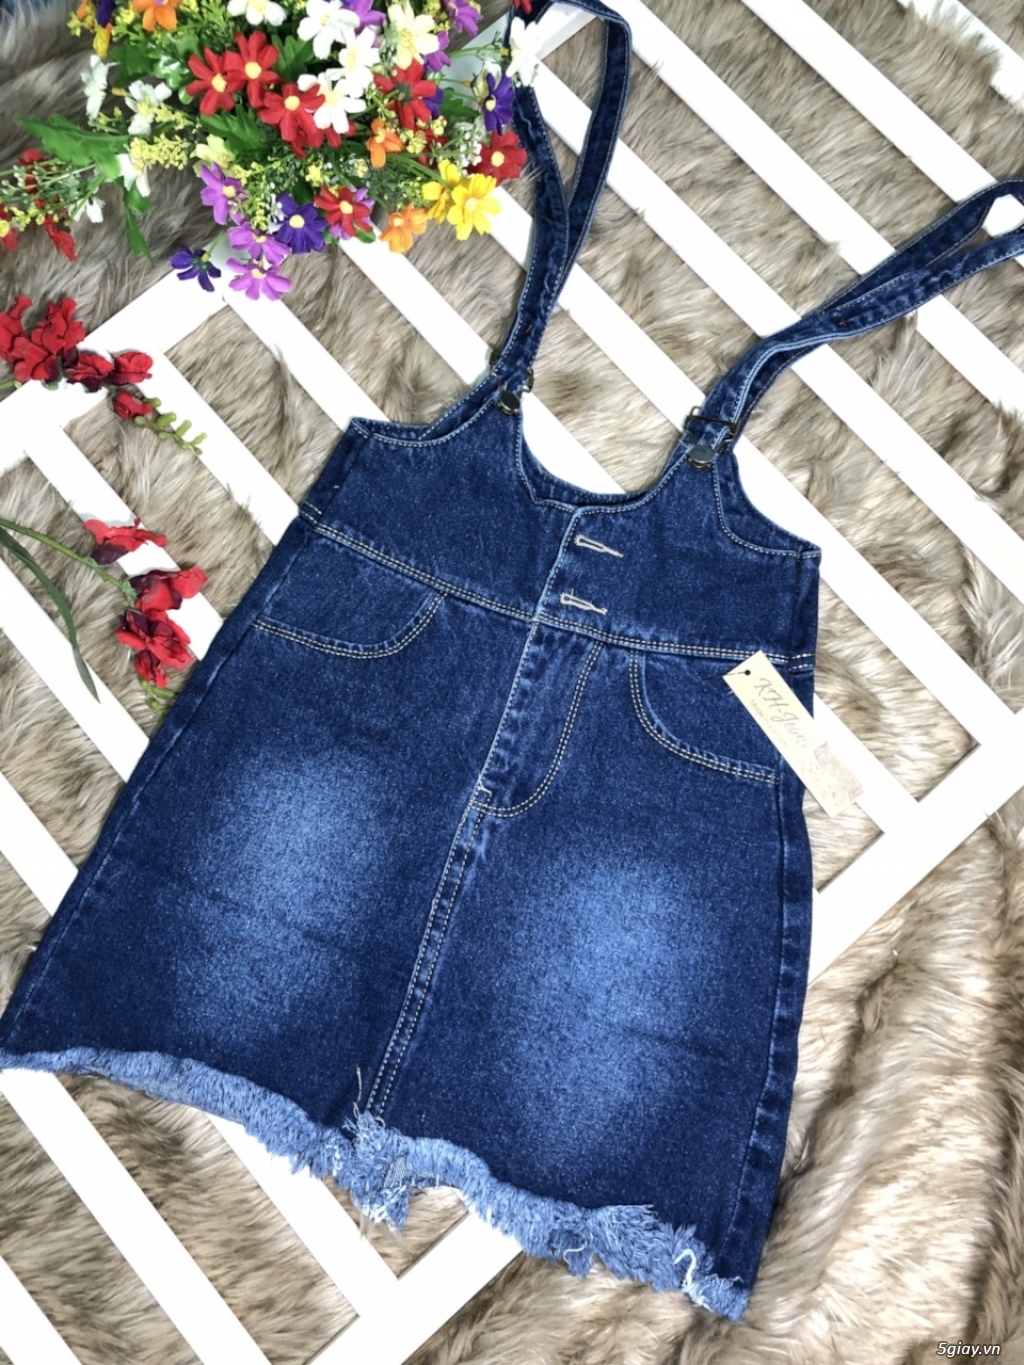 Xưởng HanaShop chuyên cung cấp Sỉ & Lẻ Jeans Nữ Các loại Giá rẽ - 5